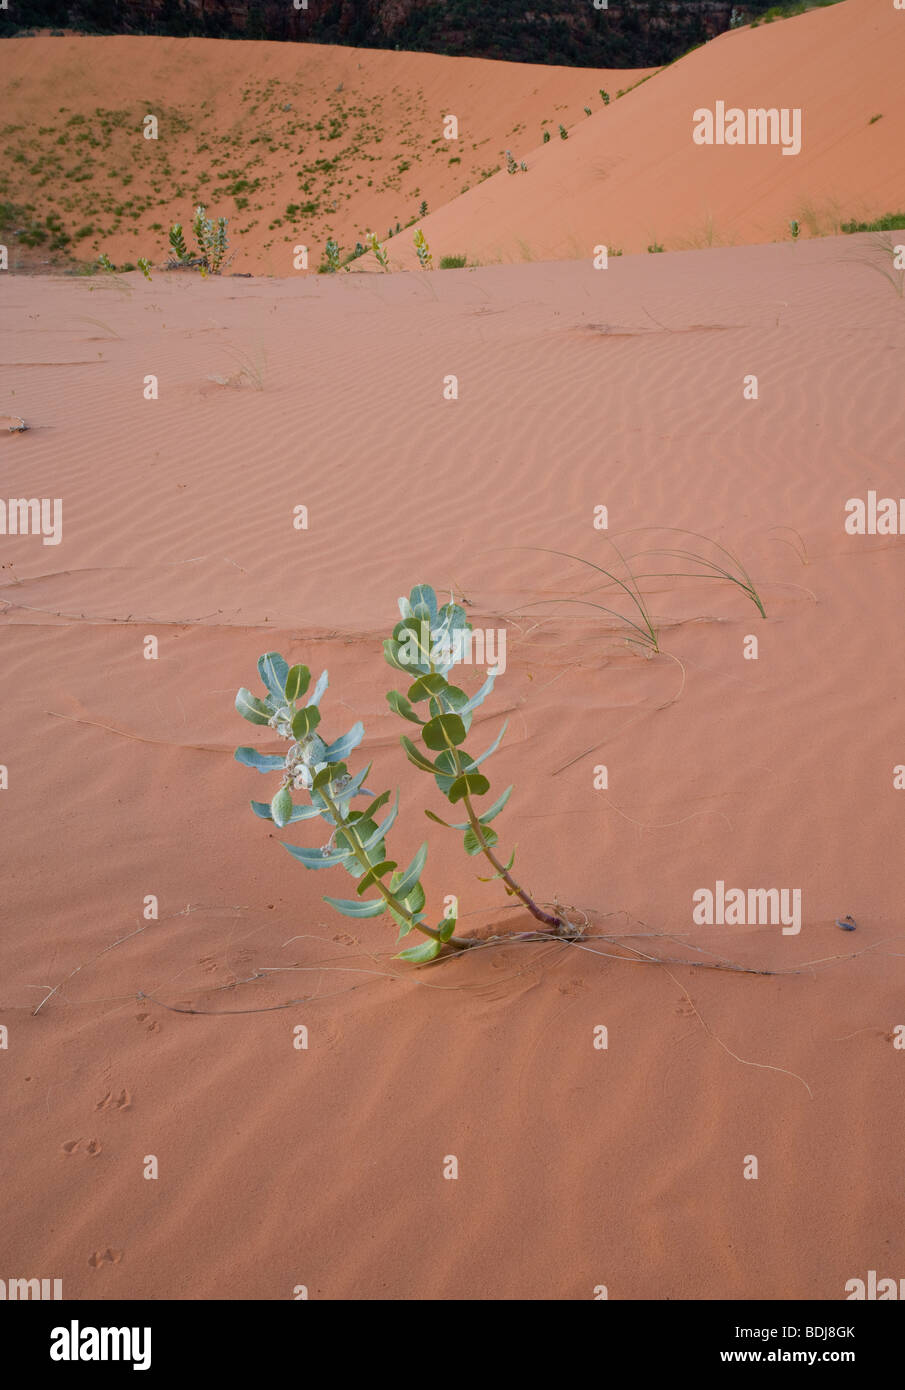 L'asclépiade (Asclepias gallois welshii) on sand dune Banque D'Images